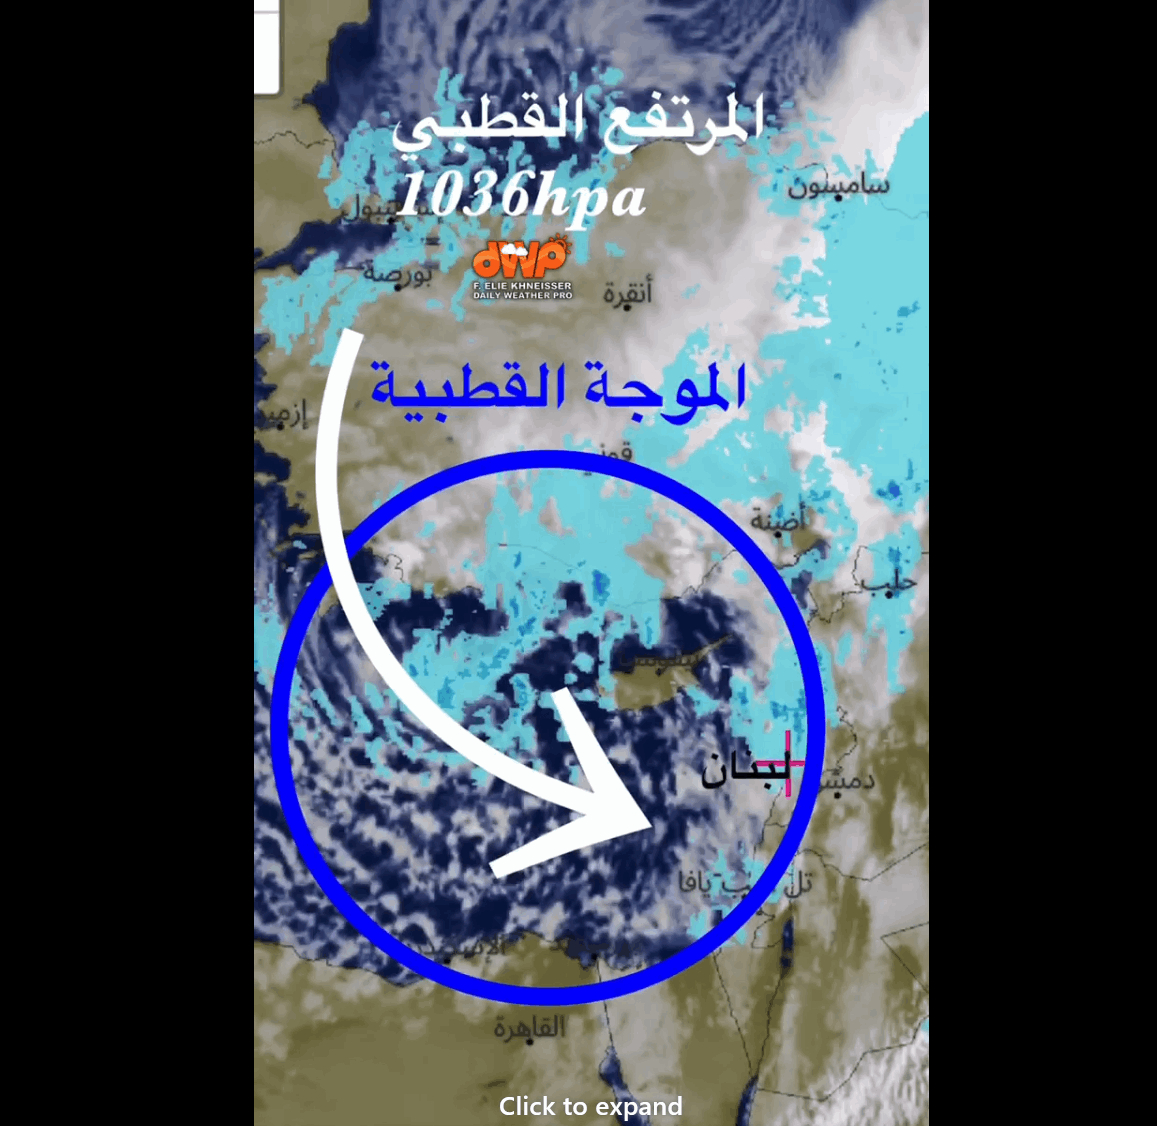 جويس تضرب لبنان: استعدوا لعاصفة ثلجية بامتياز.. الحرارة ستتدنى إلى -1 ليلاً على هذا الارتفاع!